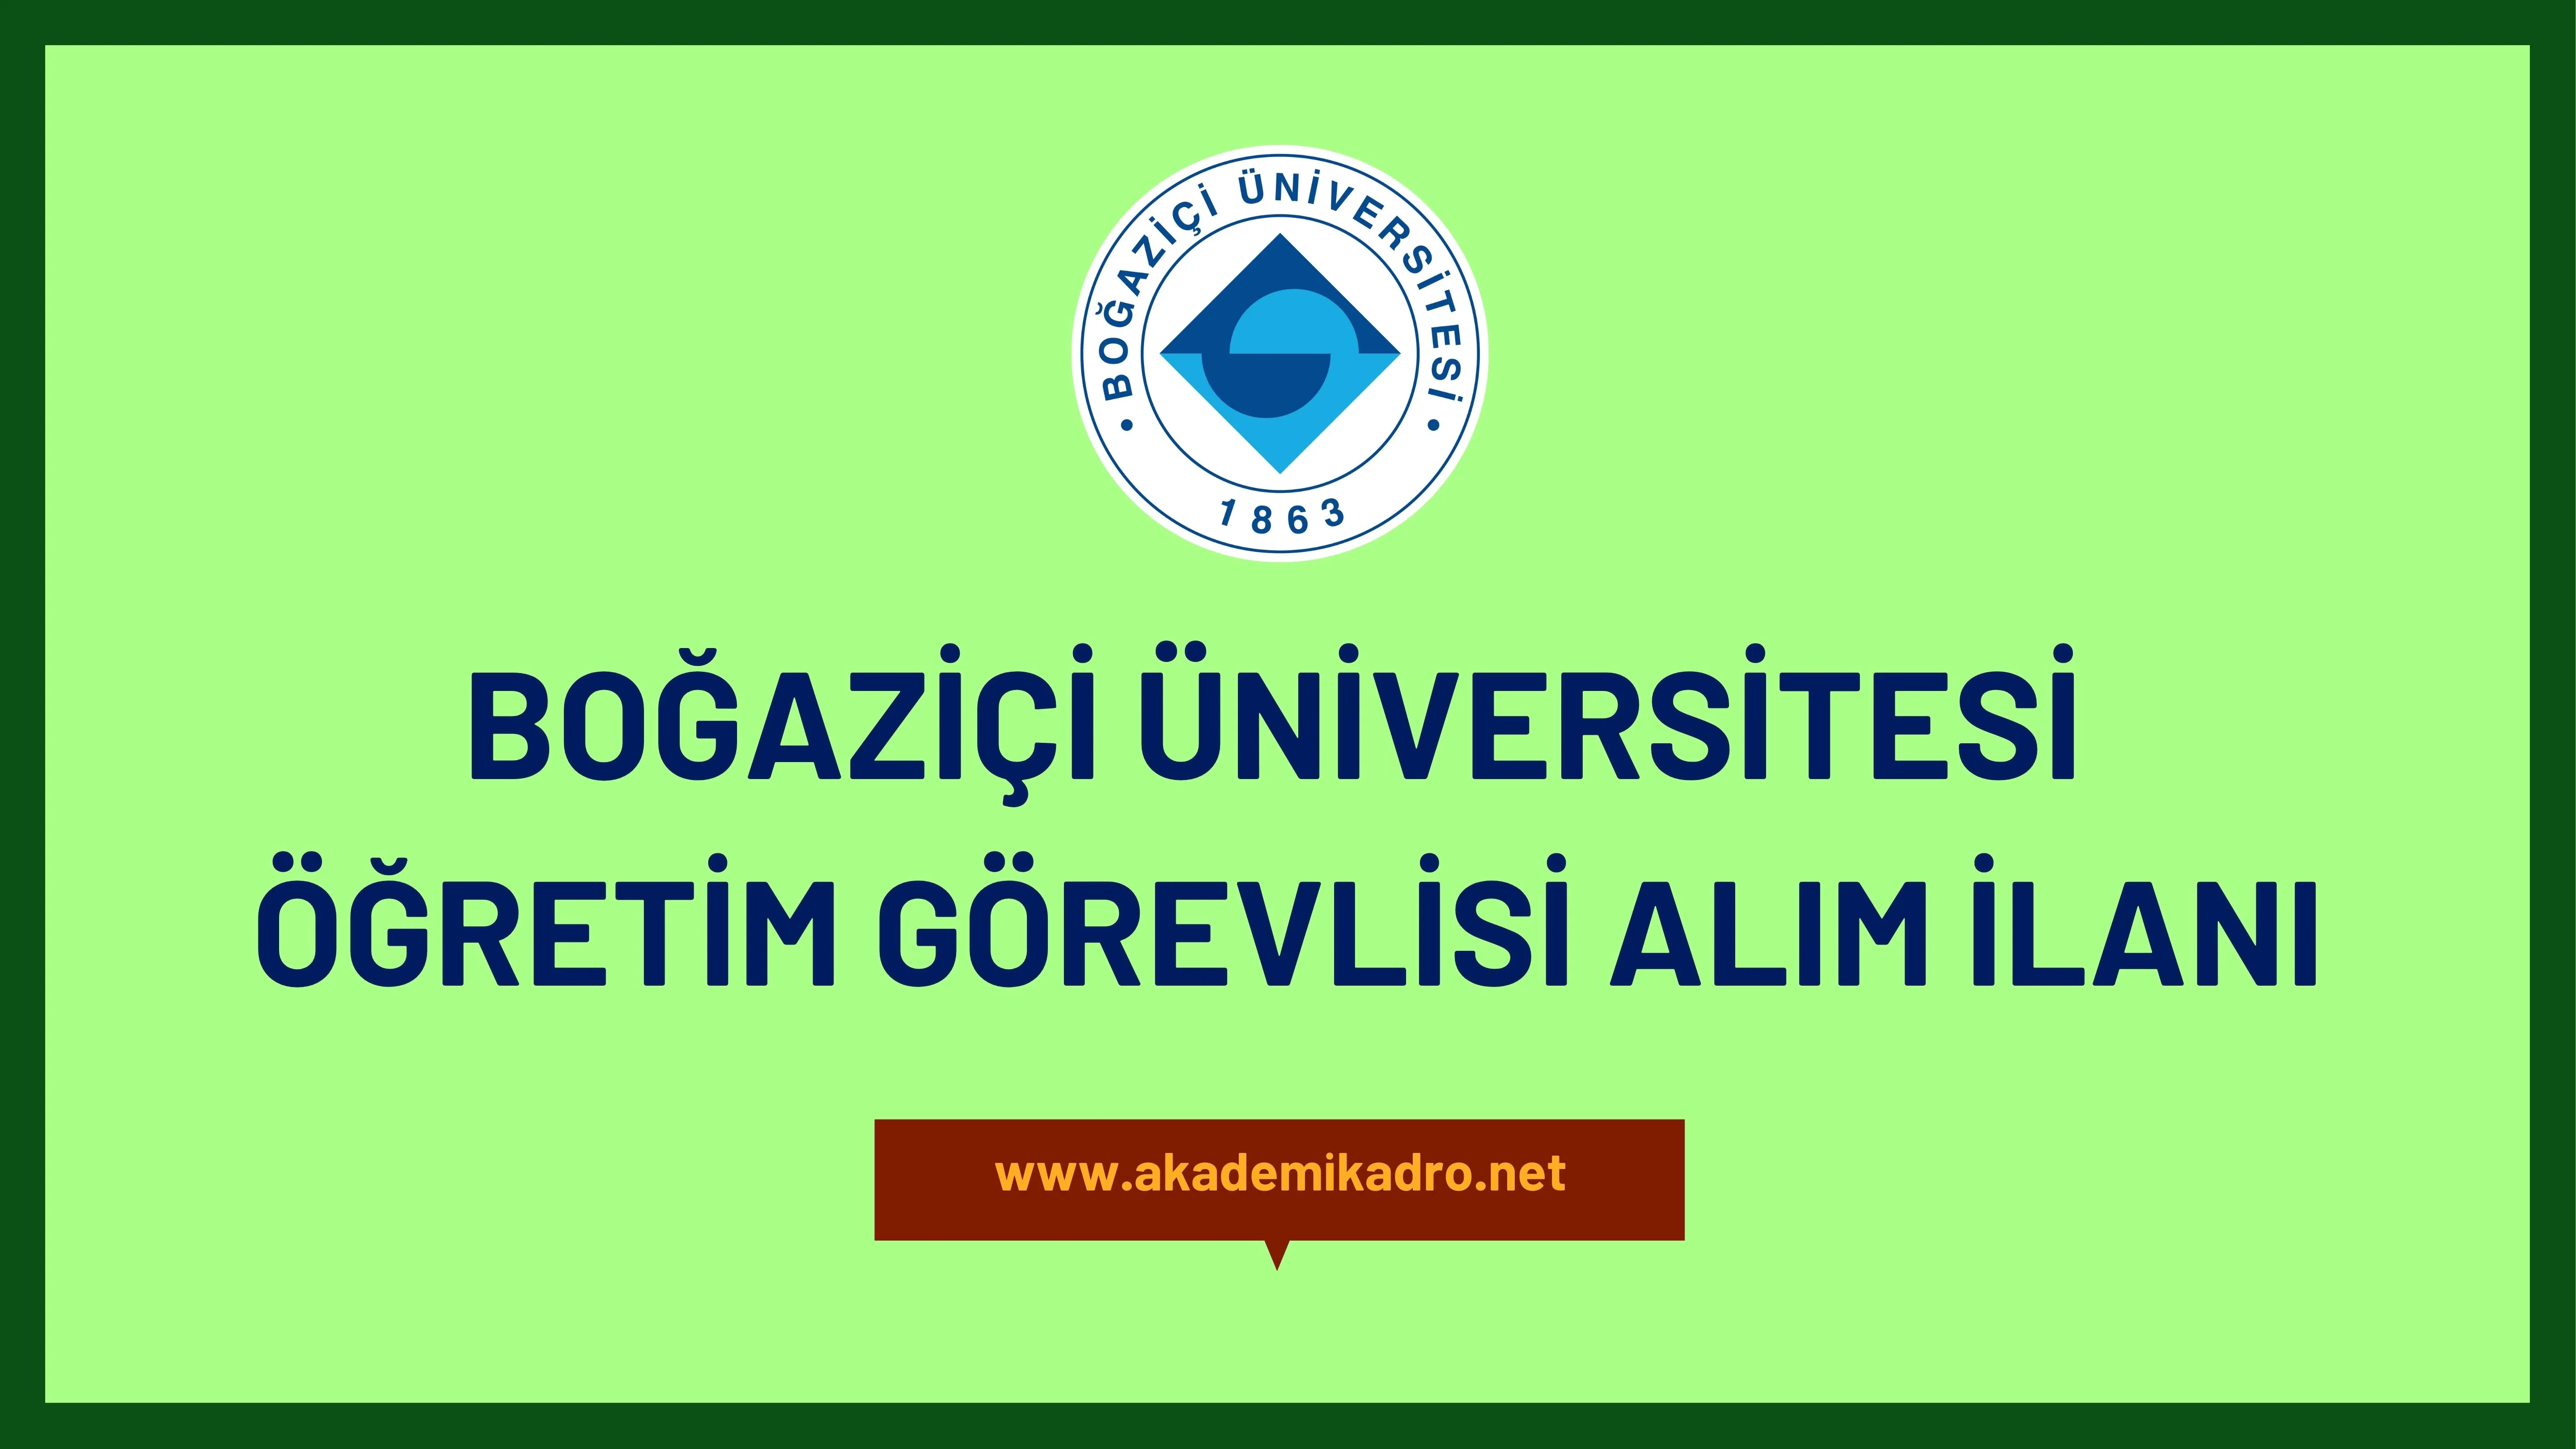 Boğaziçi Üniversitesi çeşitli alanlardan 6 Öğretim görevlisi alacak.